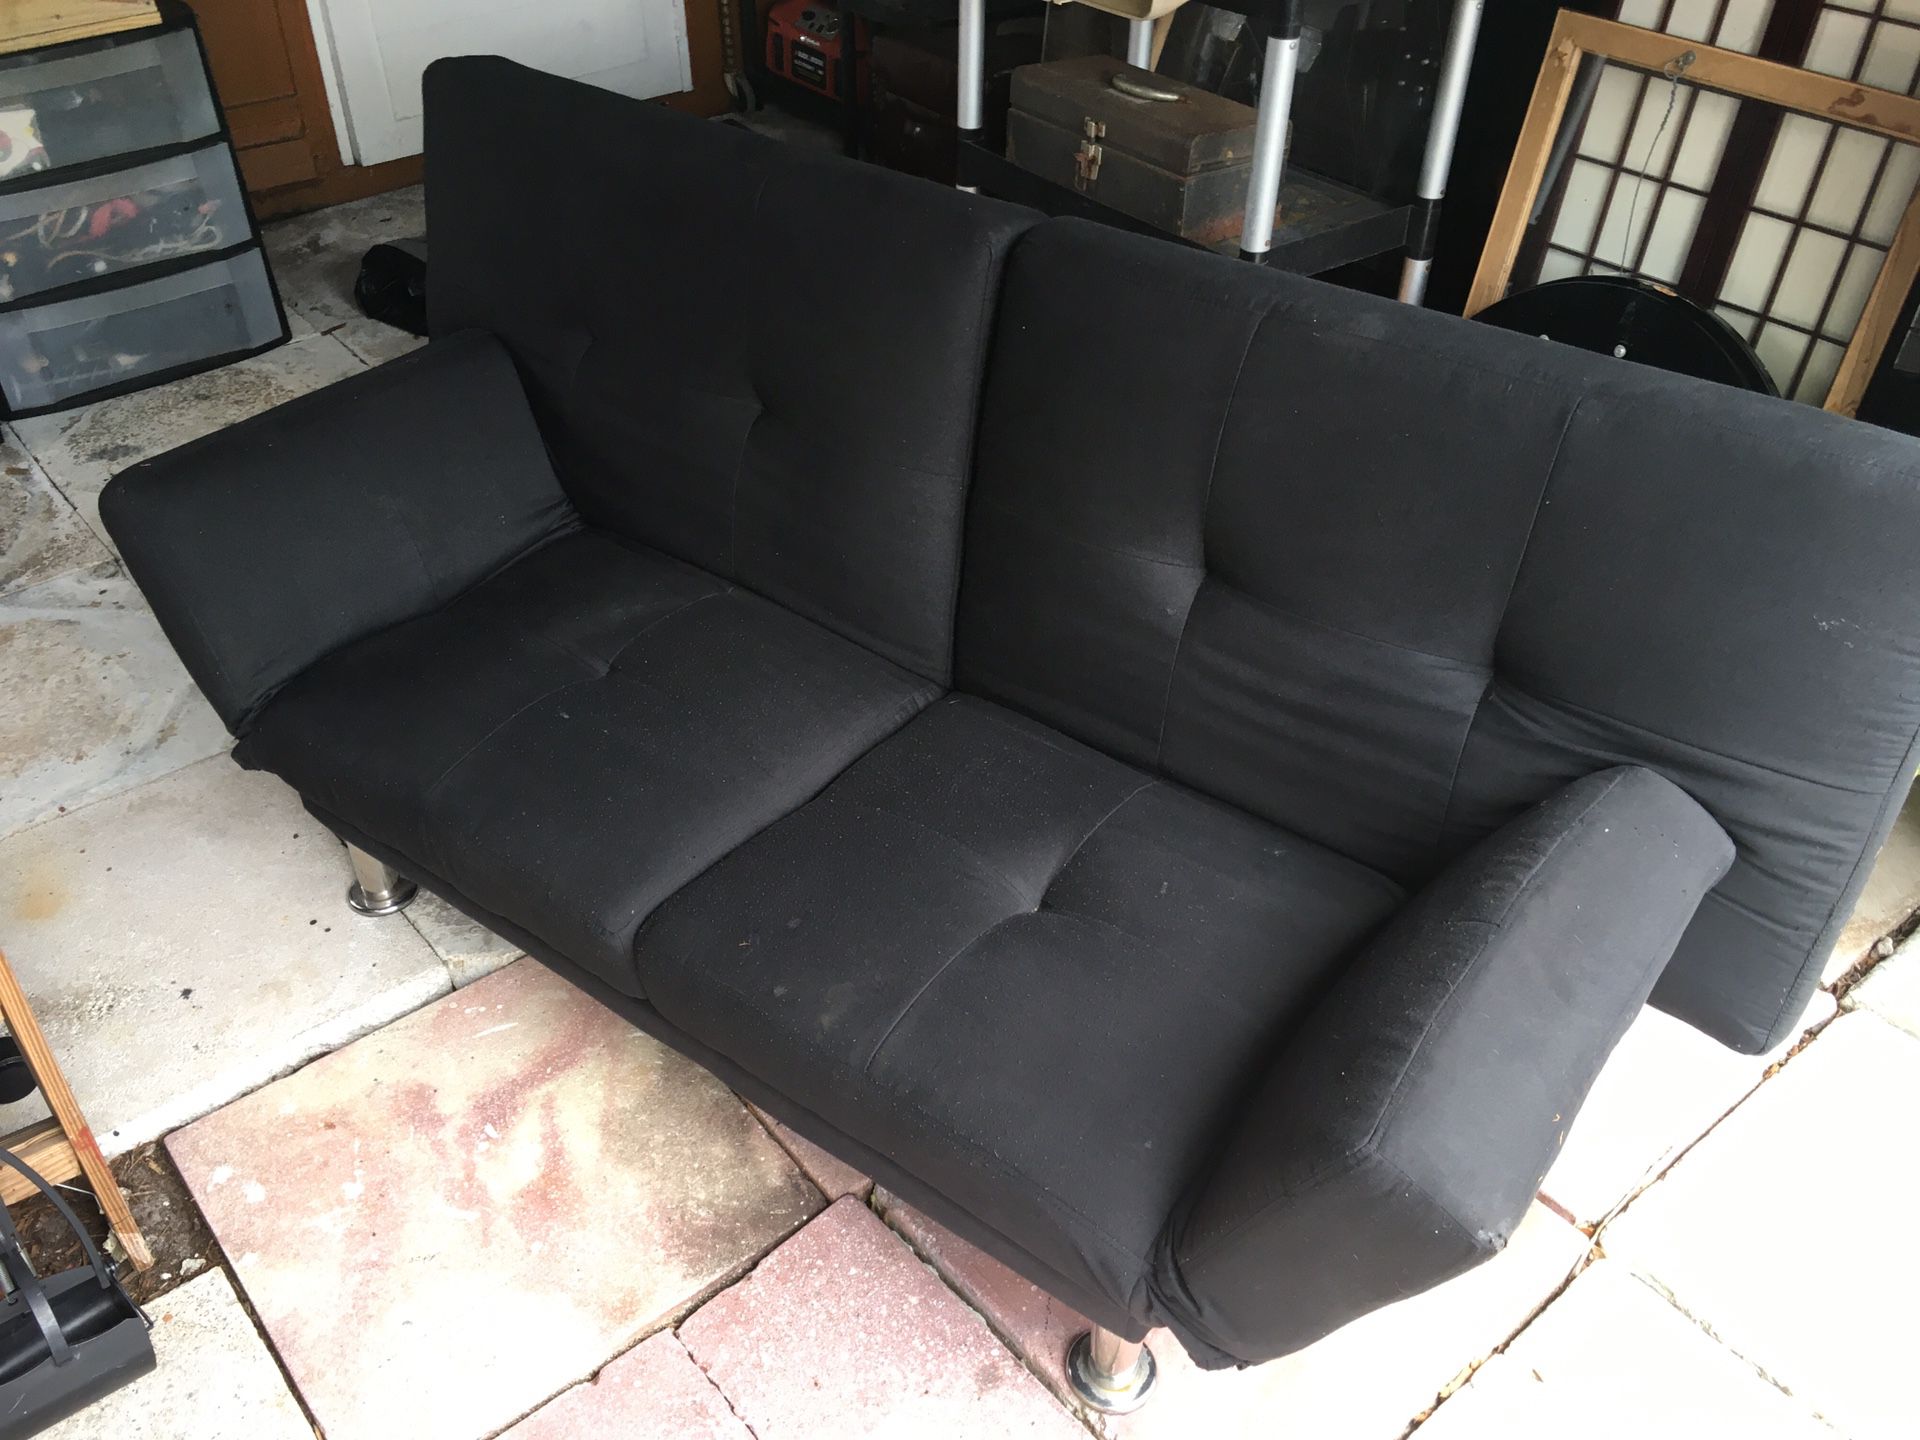 Black futon